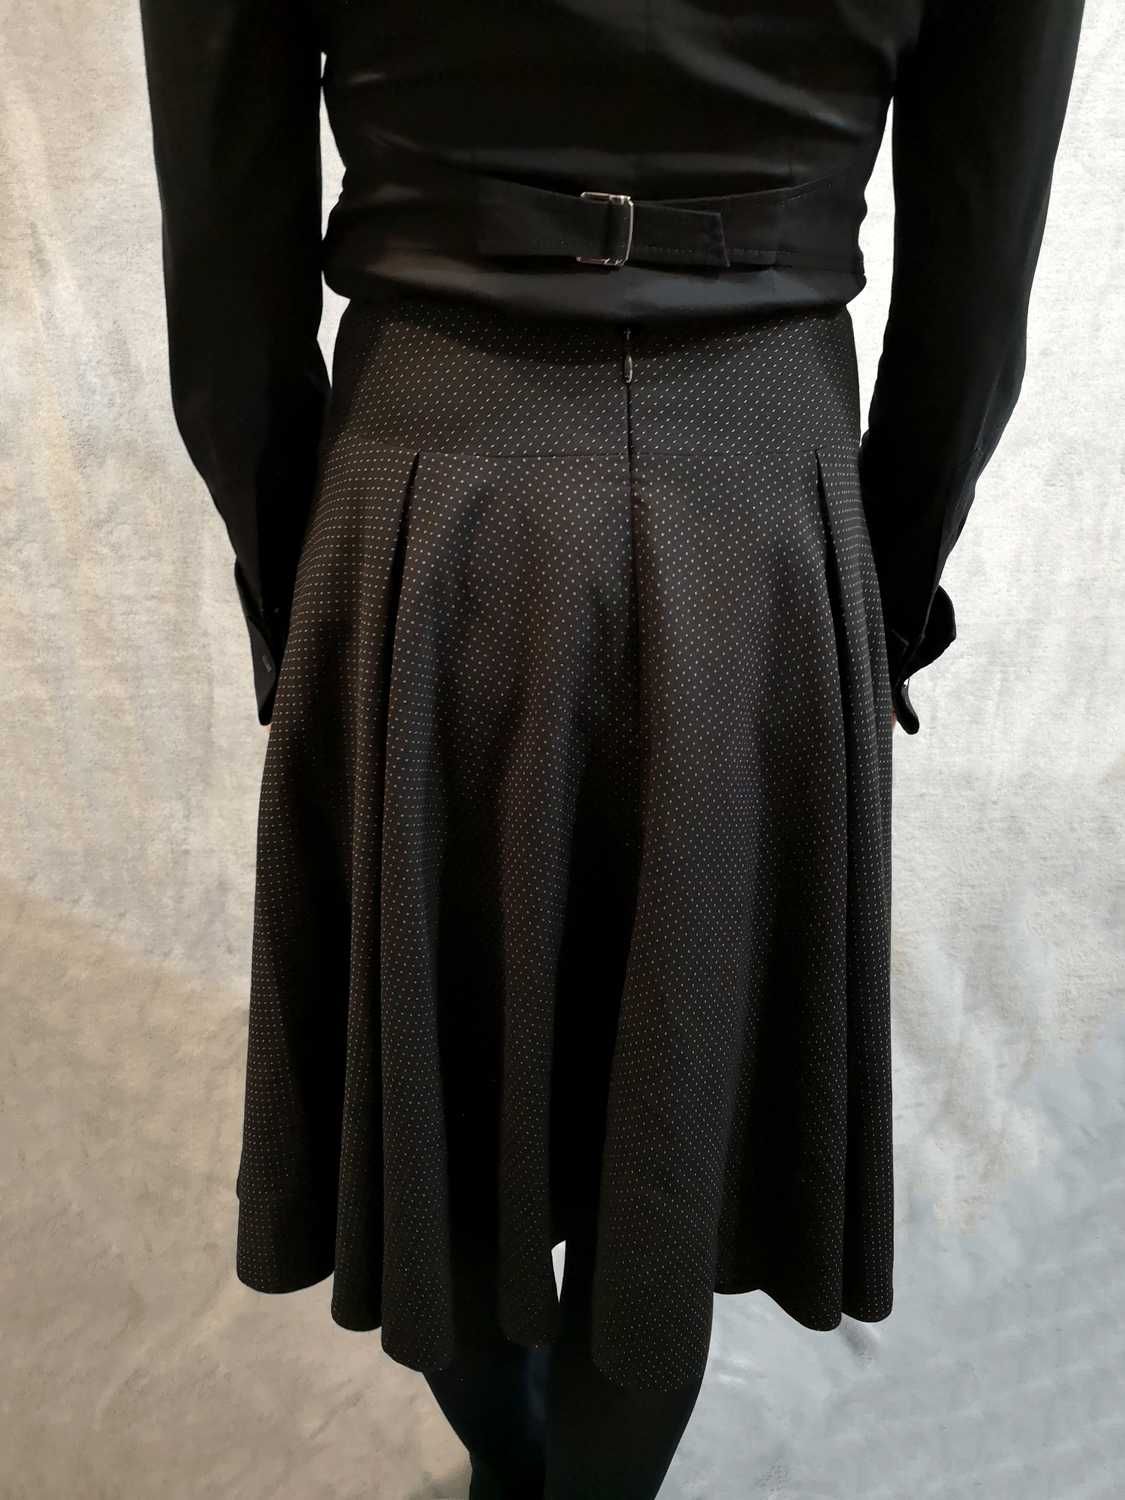 Spódnica czarna w groszki kropki midi za kolano goth gothic L 40